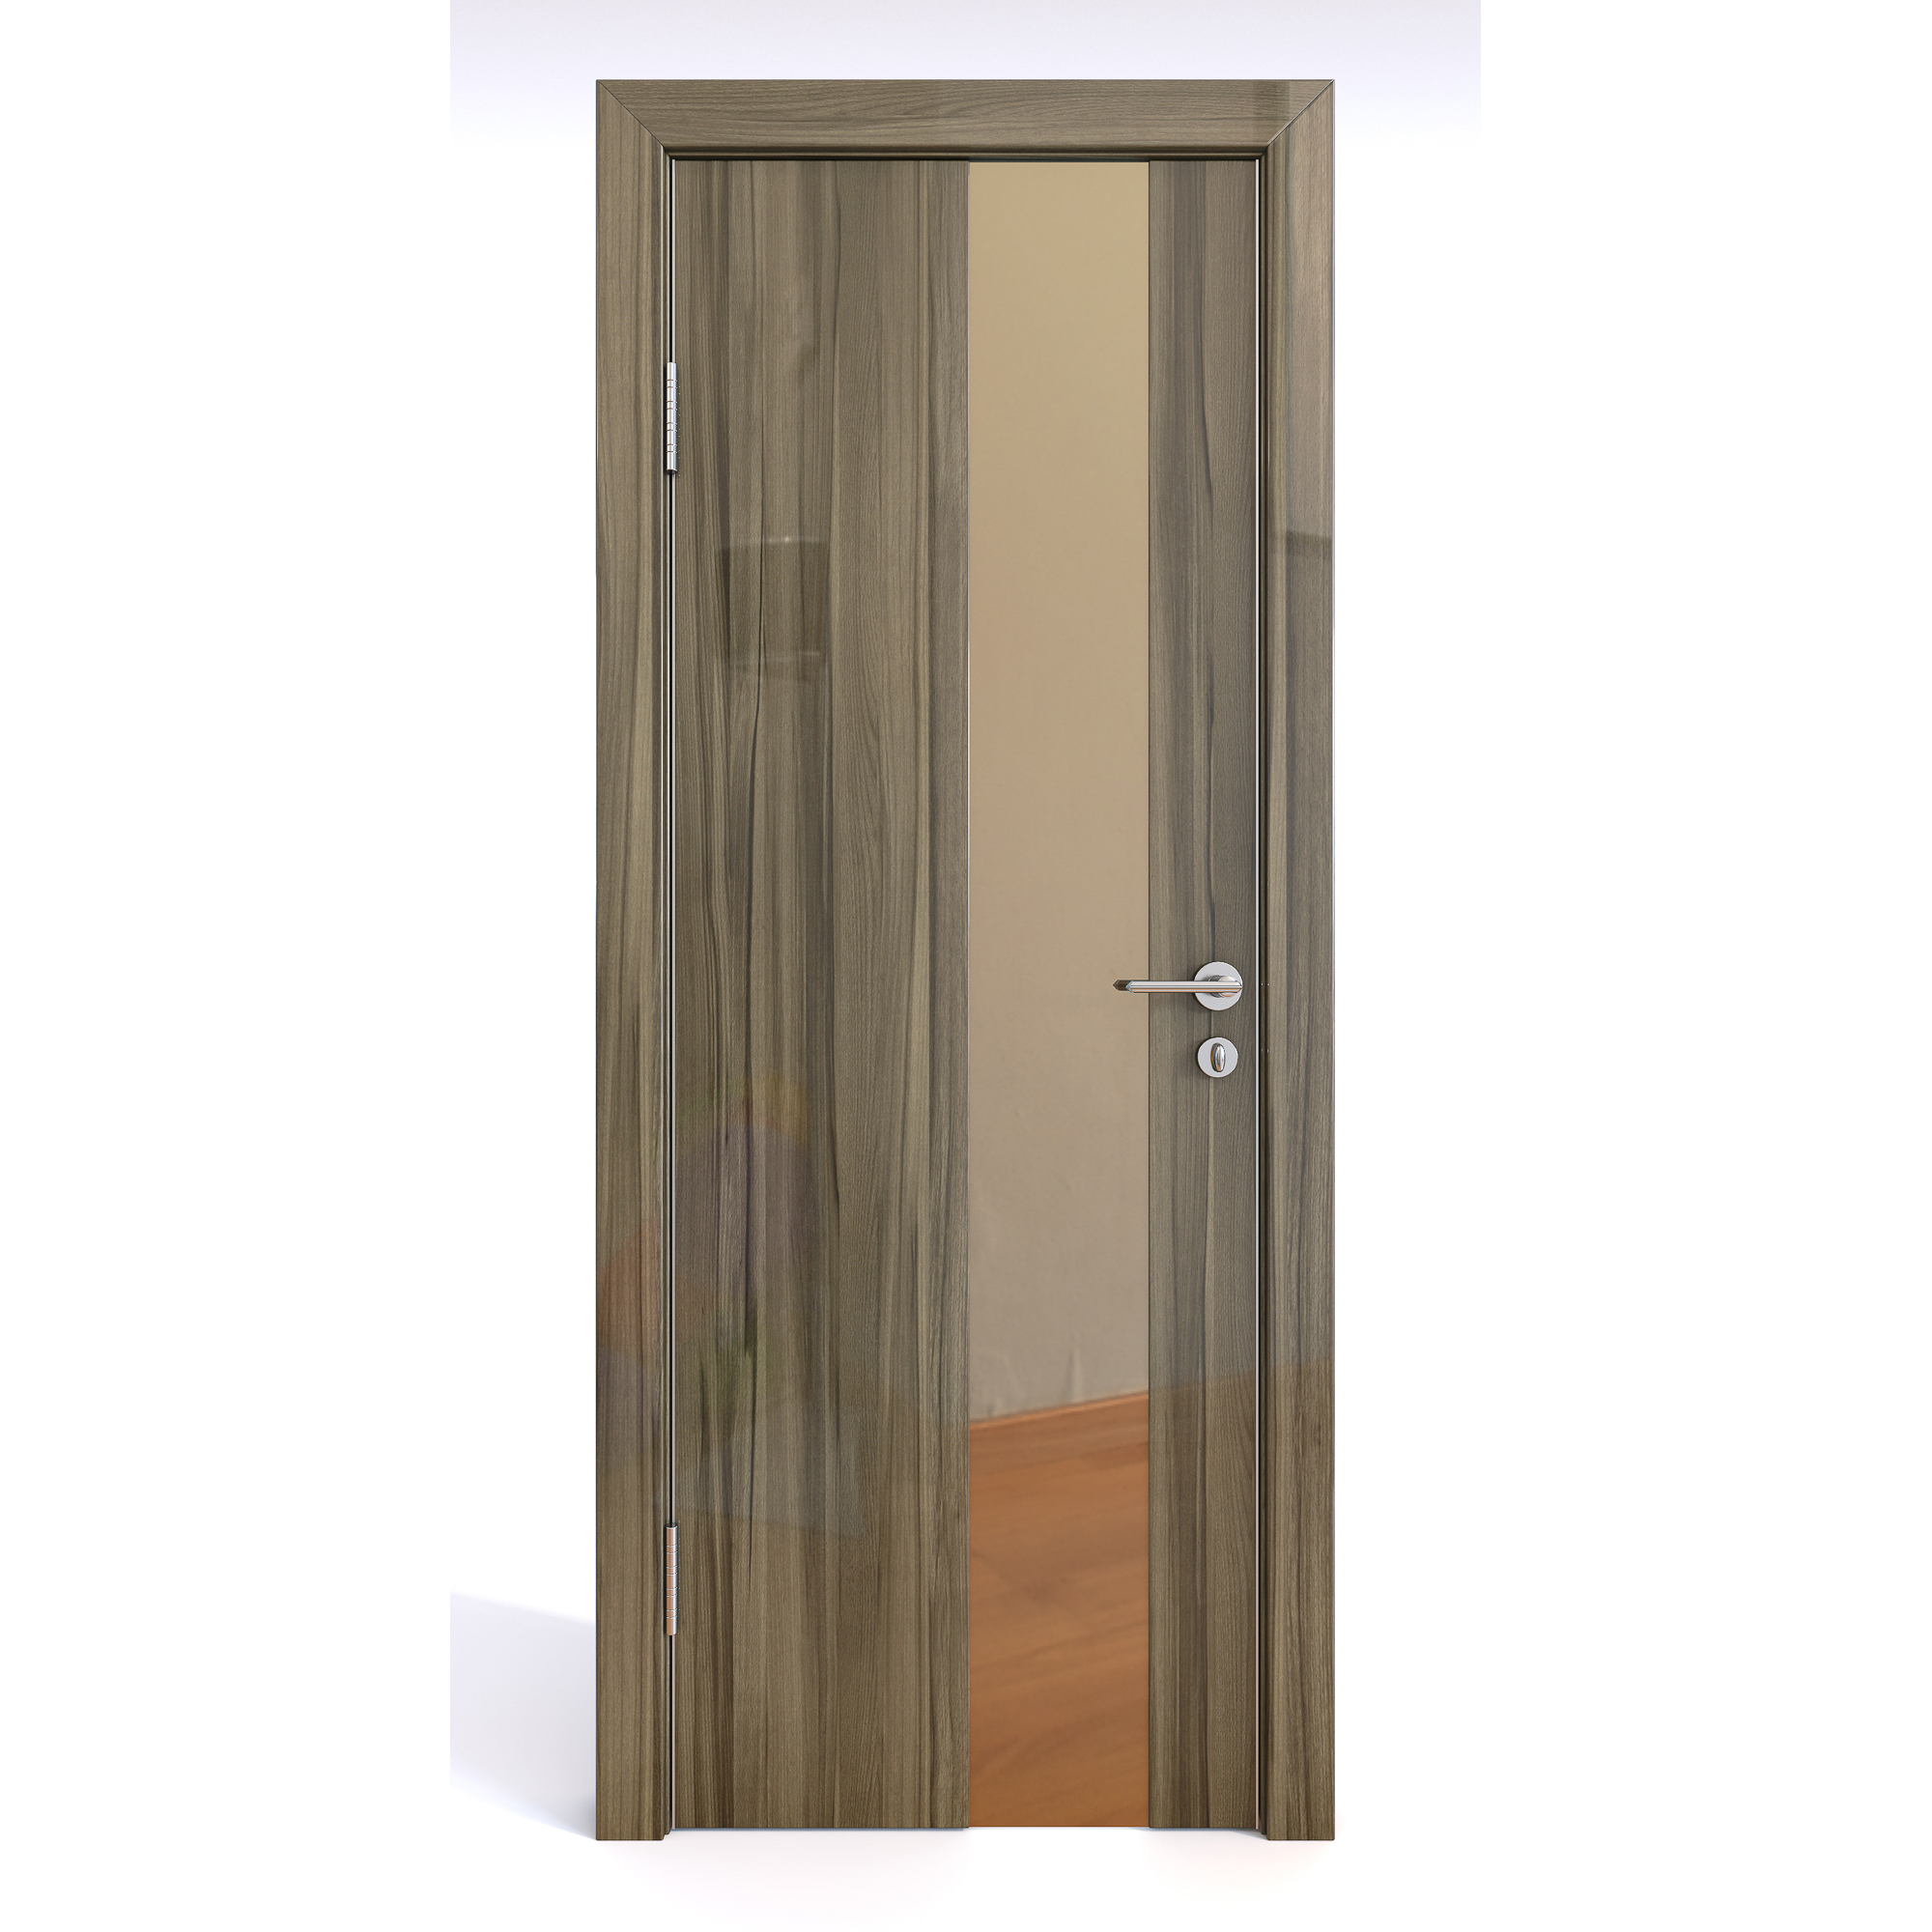 фото Межкомнатная шумоизоляционная дверь до-604 сосна глянец/бронза 200х90 дверная линия